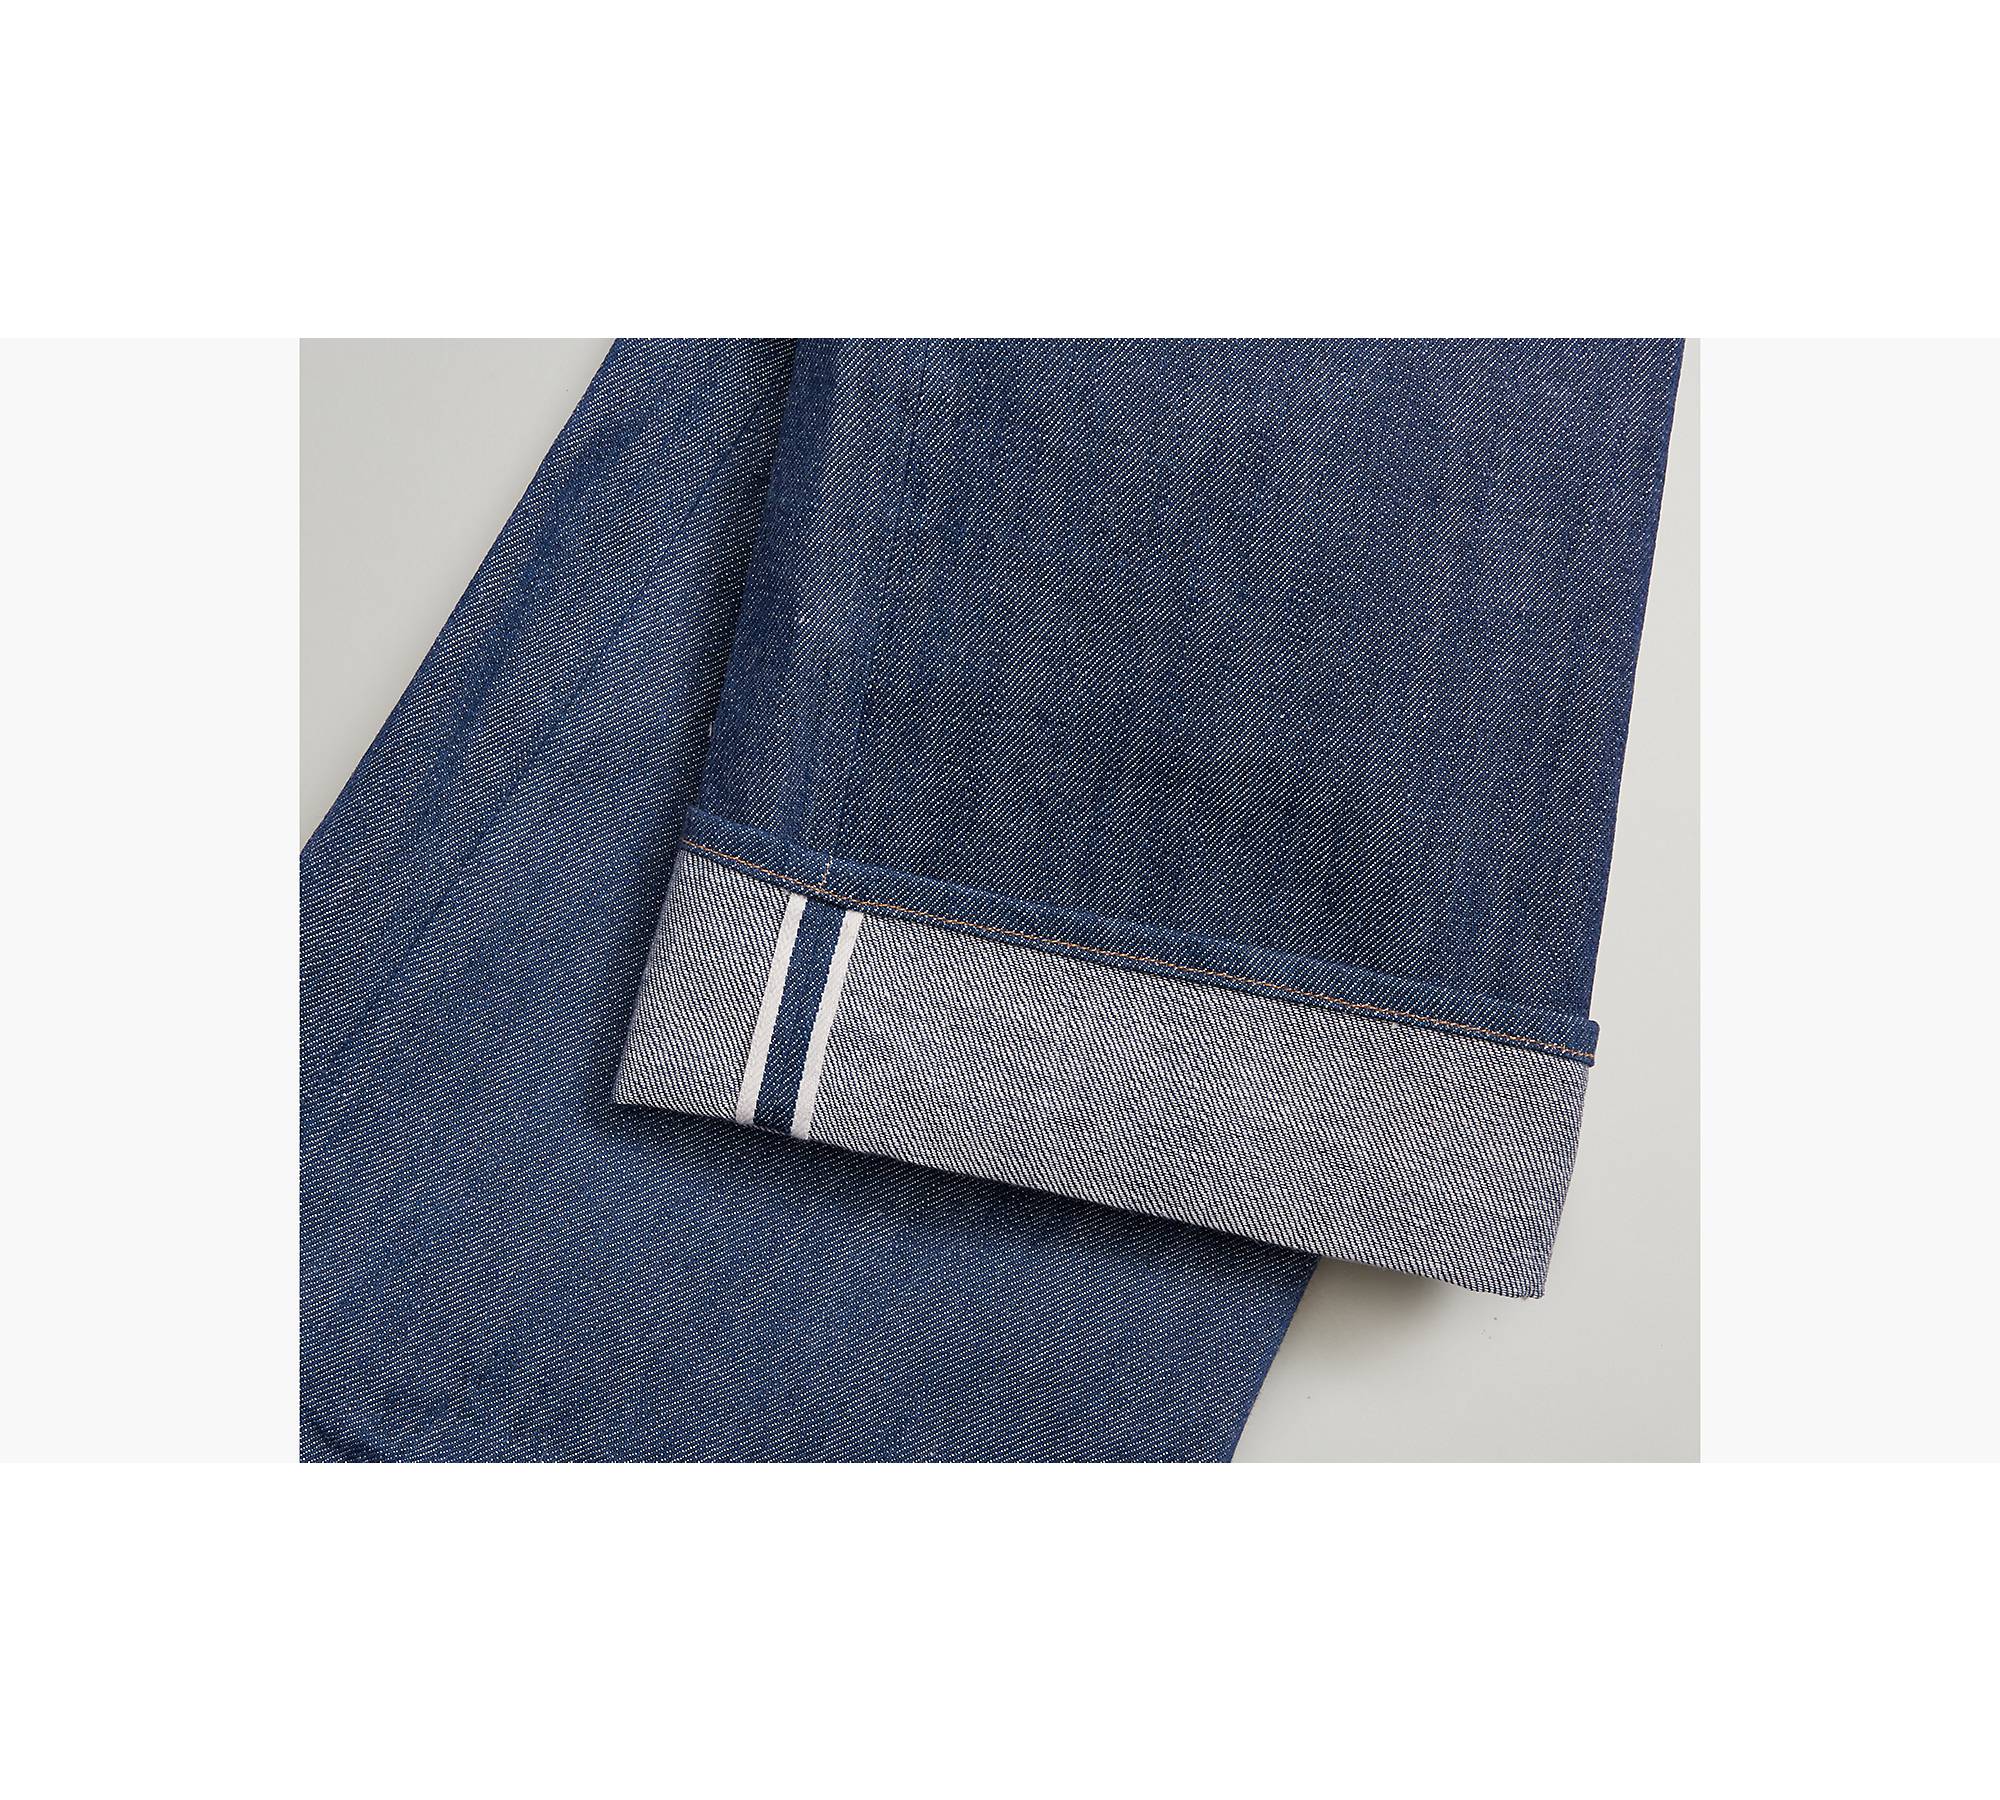 1890 501® Original Fit Selvedge Men's Jeans - Medium Wash